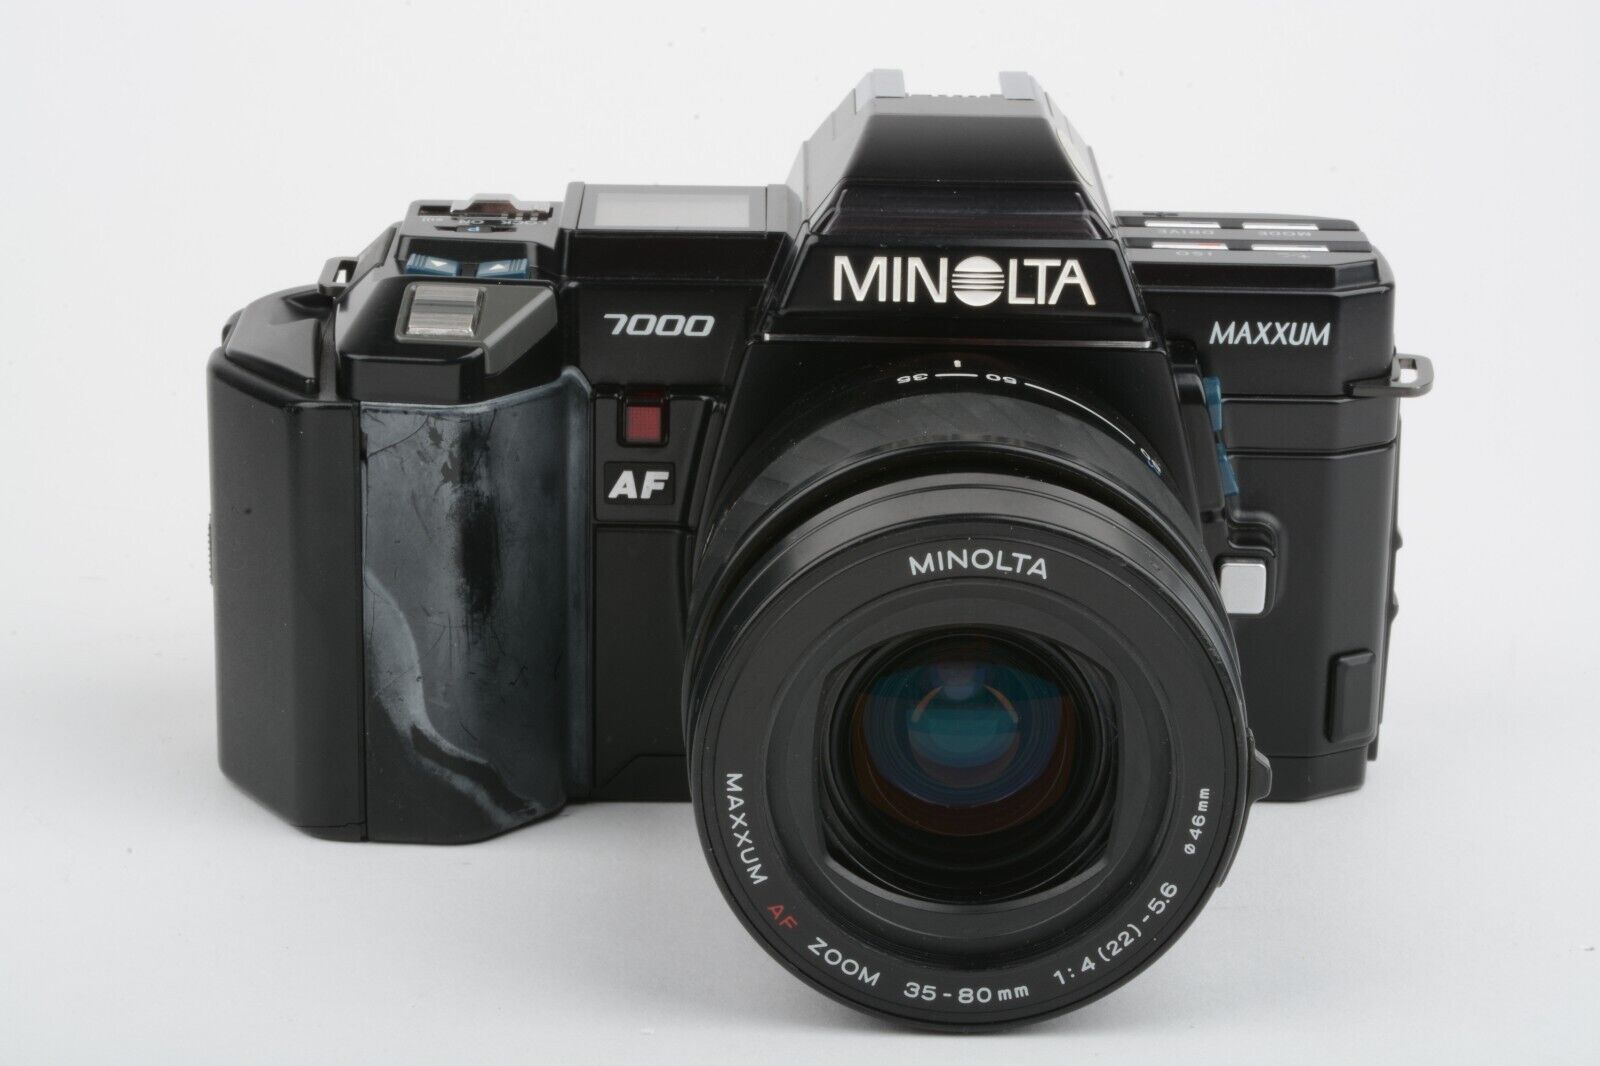 Minolta Maxxum 7000 Date w/Minolta AF 35-80mm f4-5.6 zoom, case